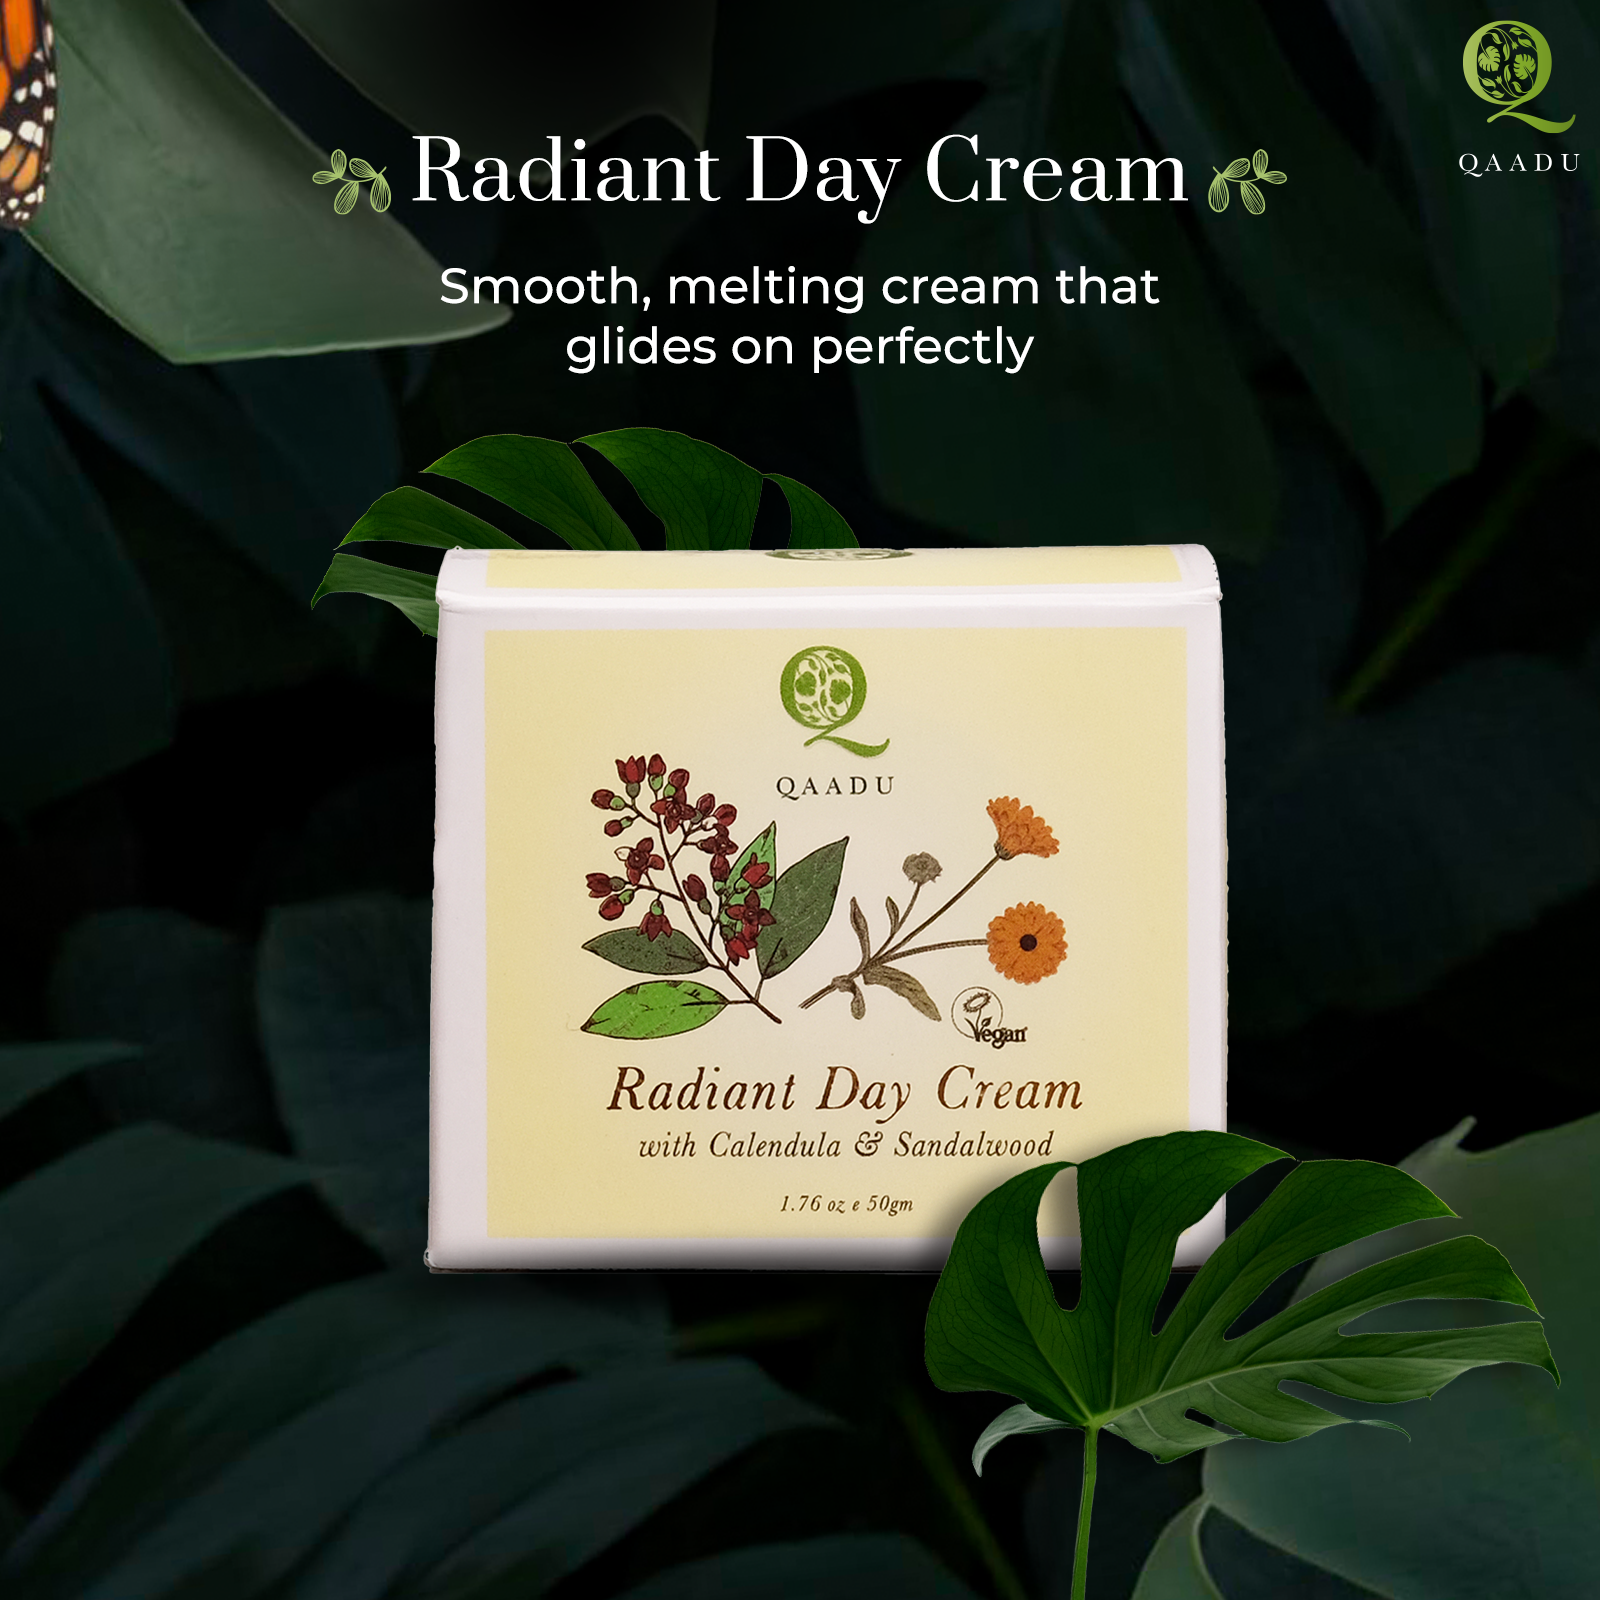 Radiant Day Cream